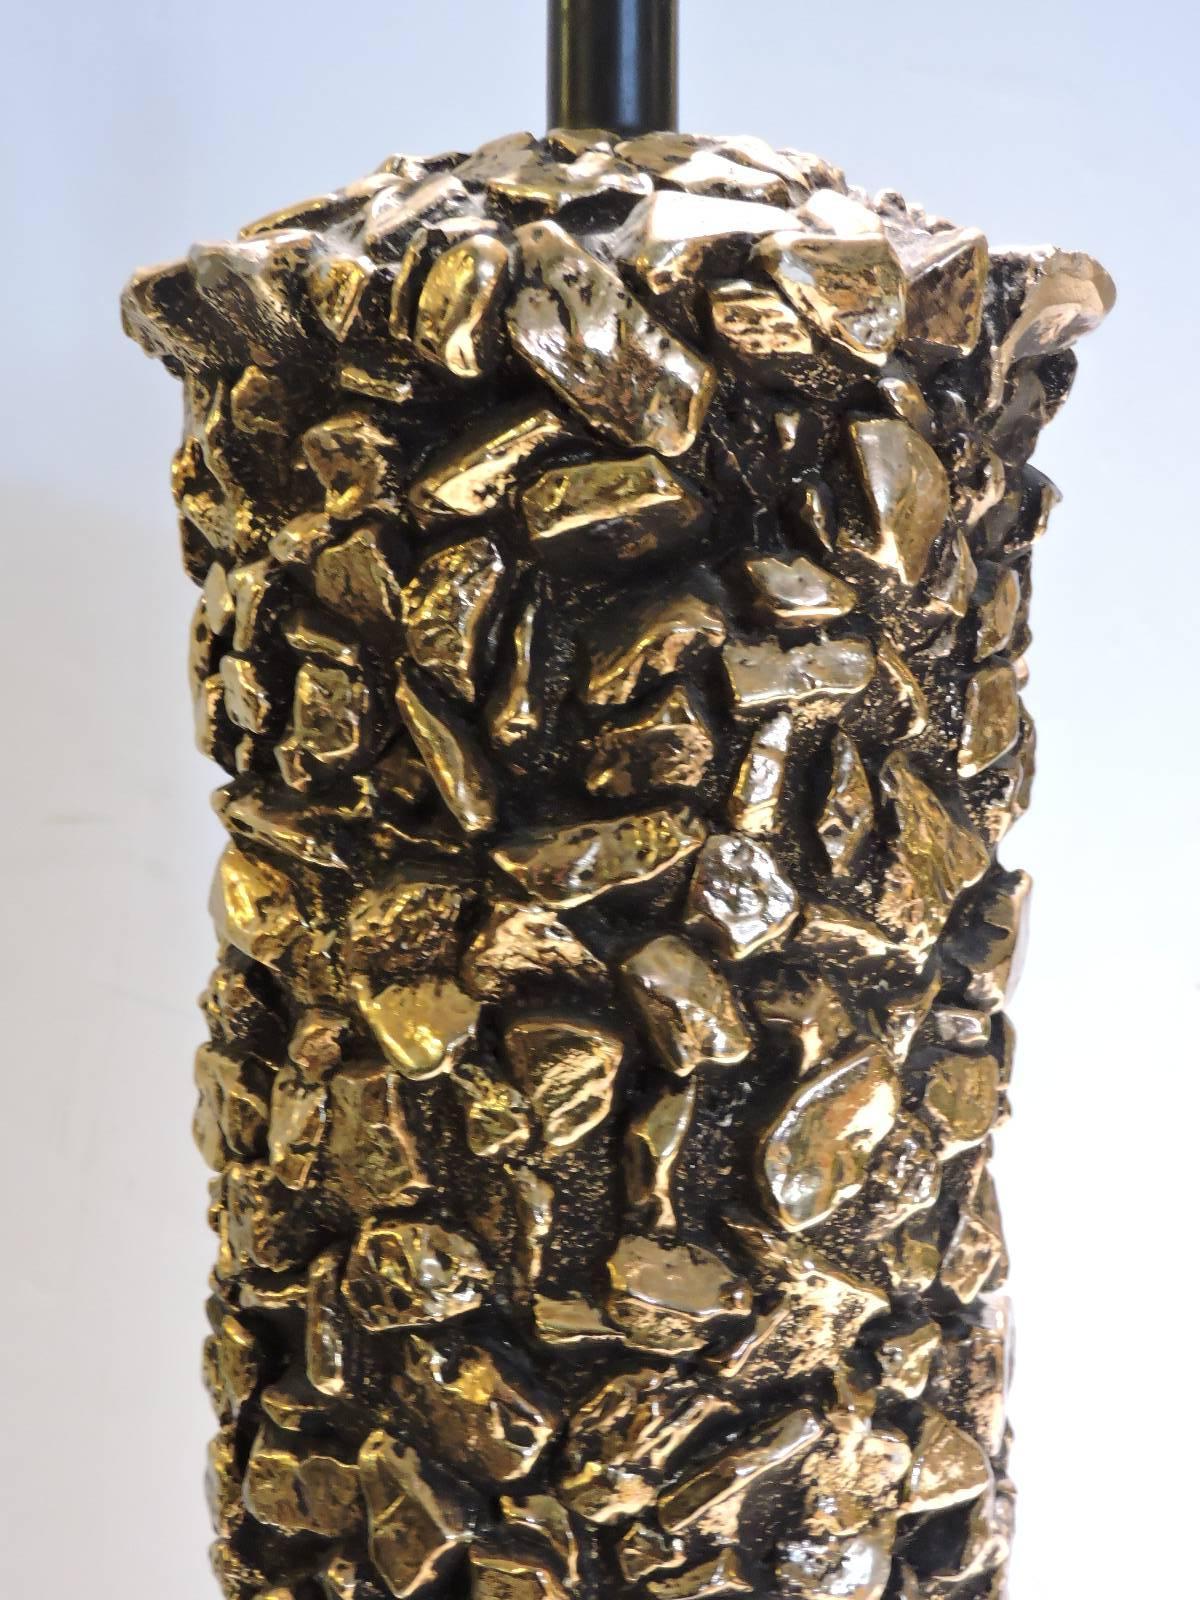  Grande lampe de table en plâtre de forme cylindrique avec un motif de faux galets de roche dans une surface d'origine finement détaillée, dorée et brunie. Circa 1960. Belle lampe. Regardez toutes les photos et lisez le rapport d'état dans la